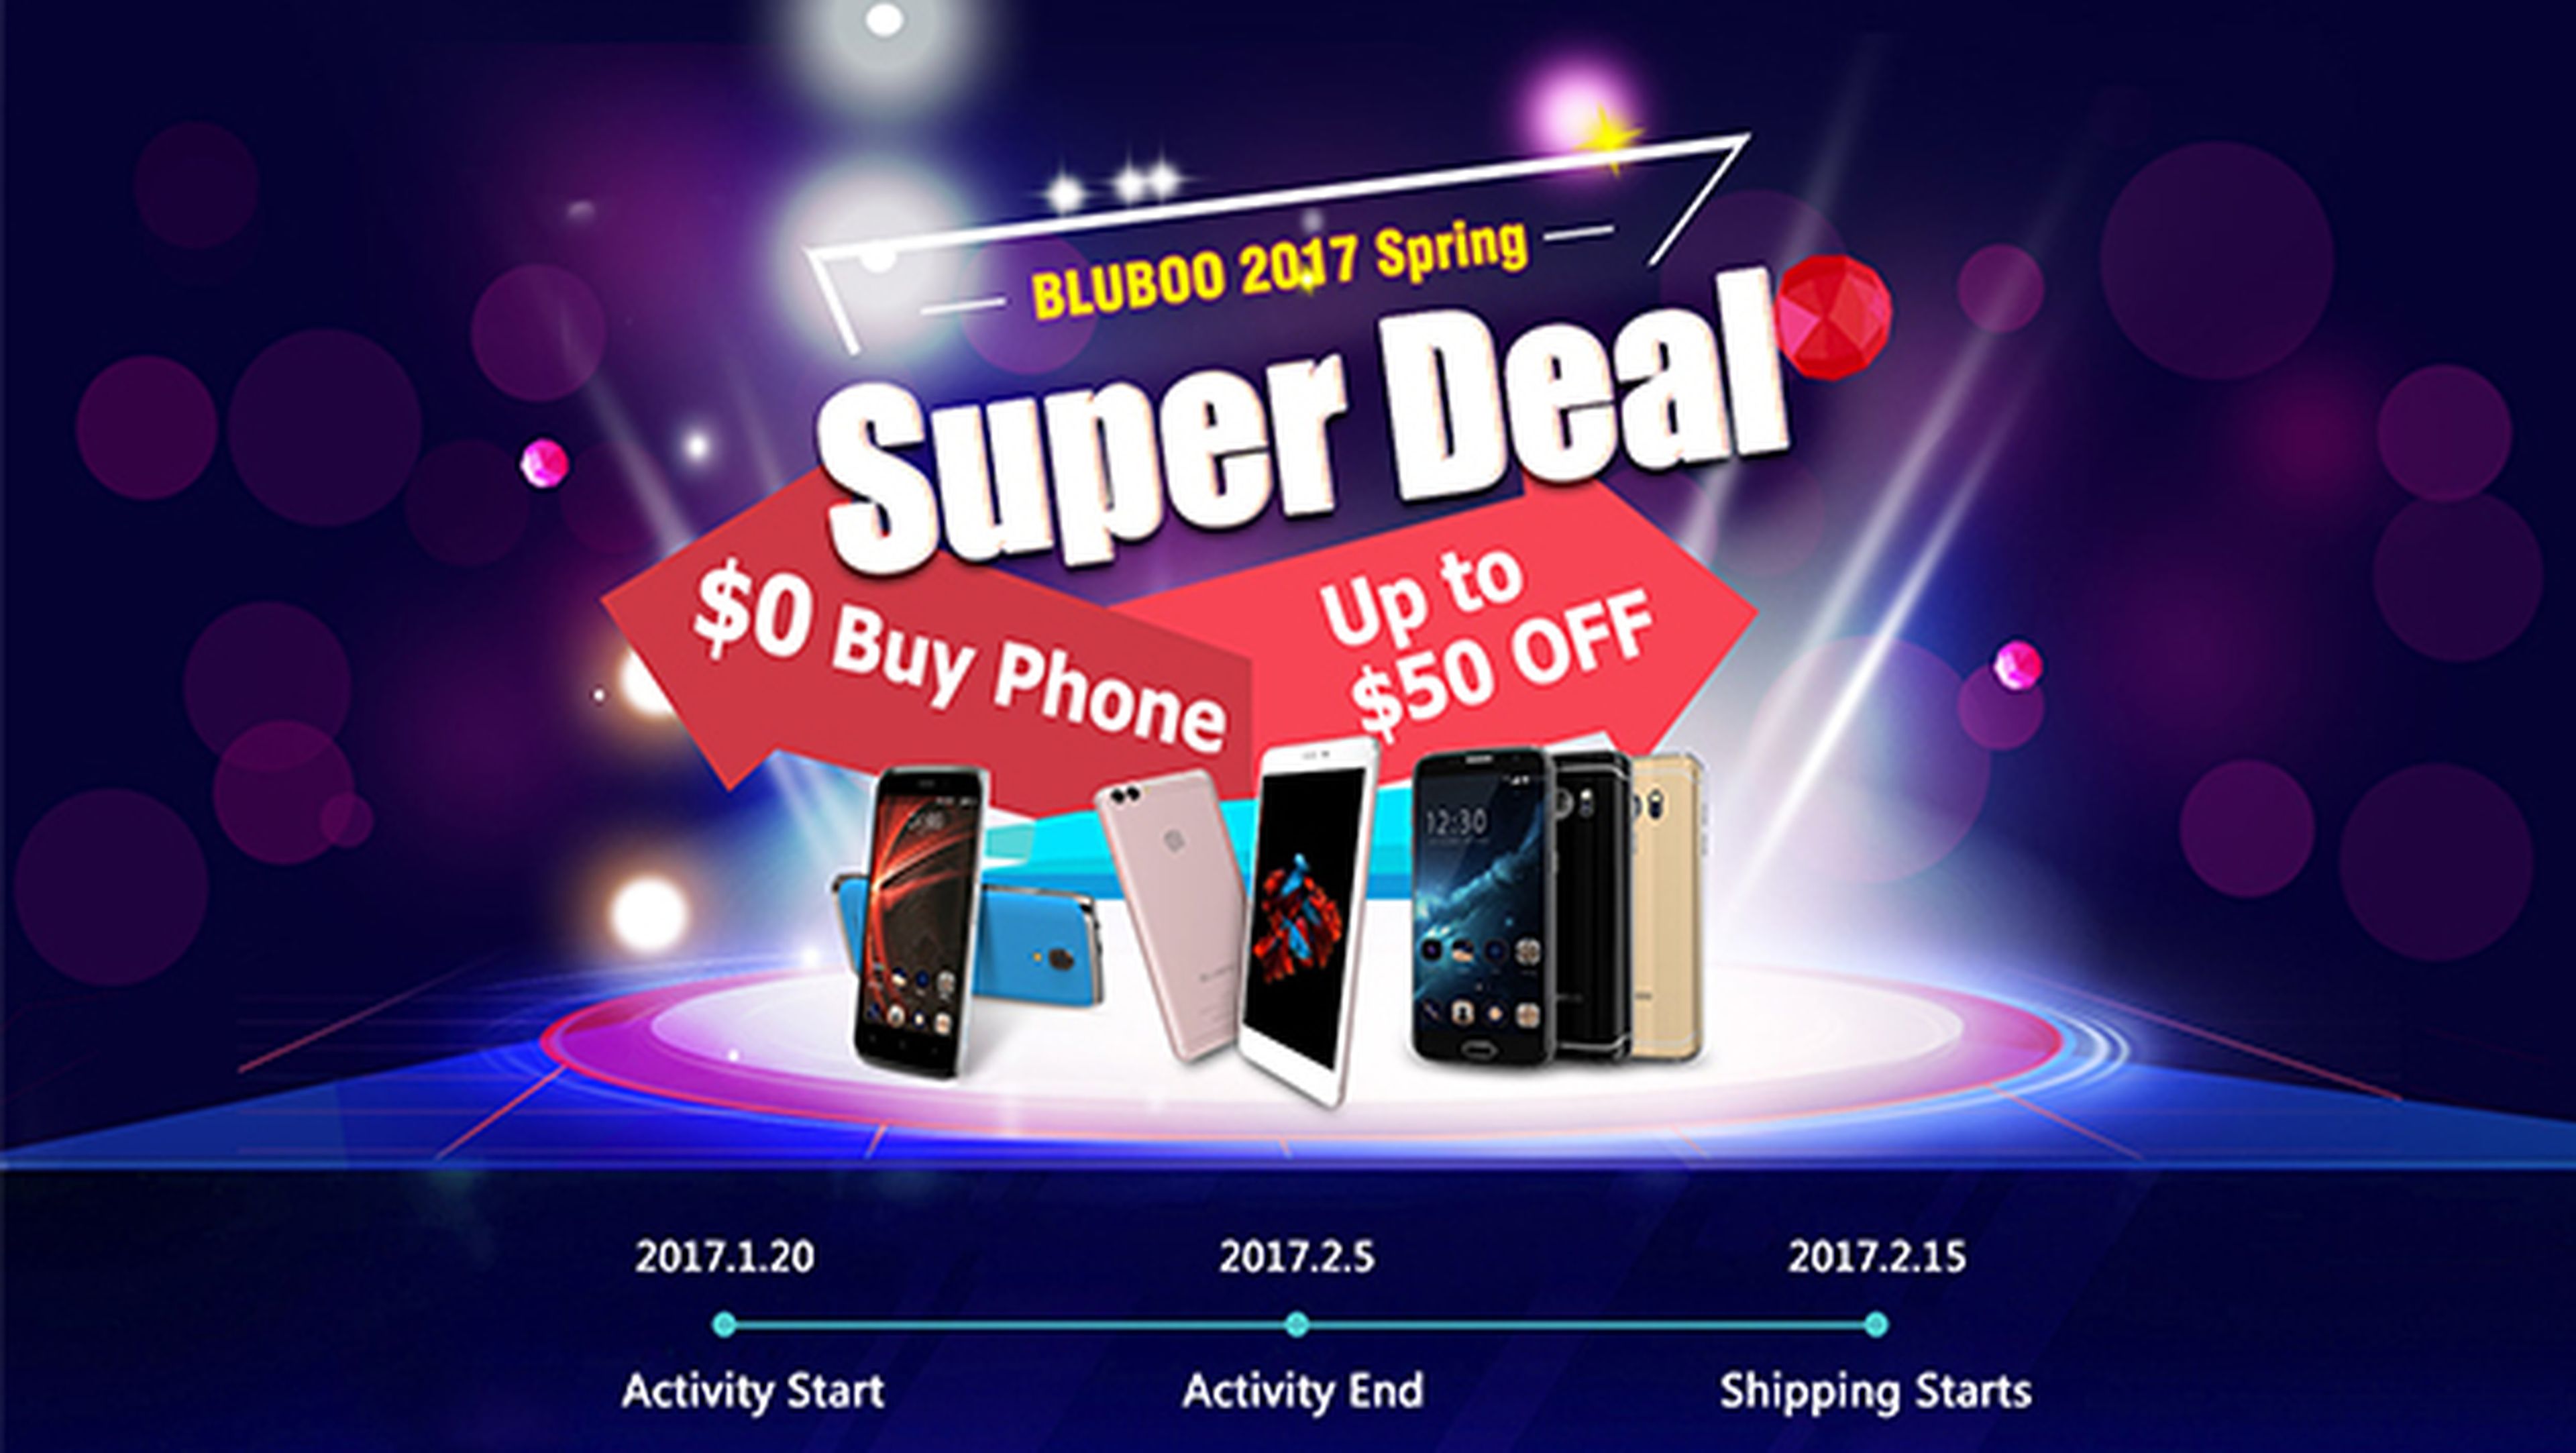 Bluboo celebra el Año Nuevo chino regalando 50 móviles